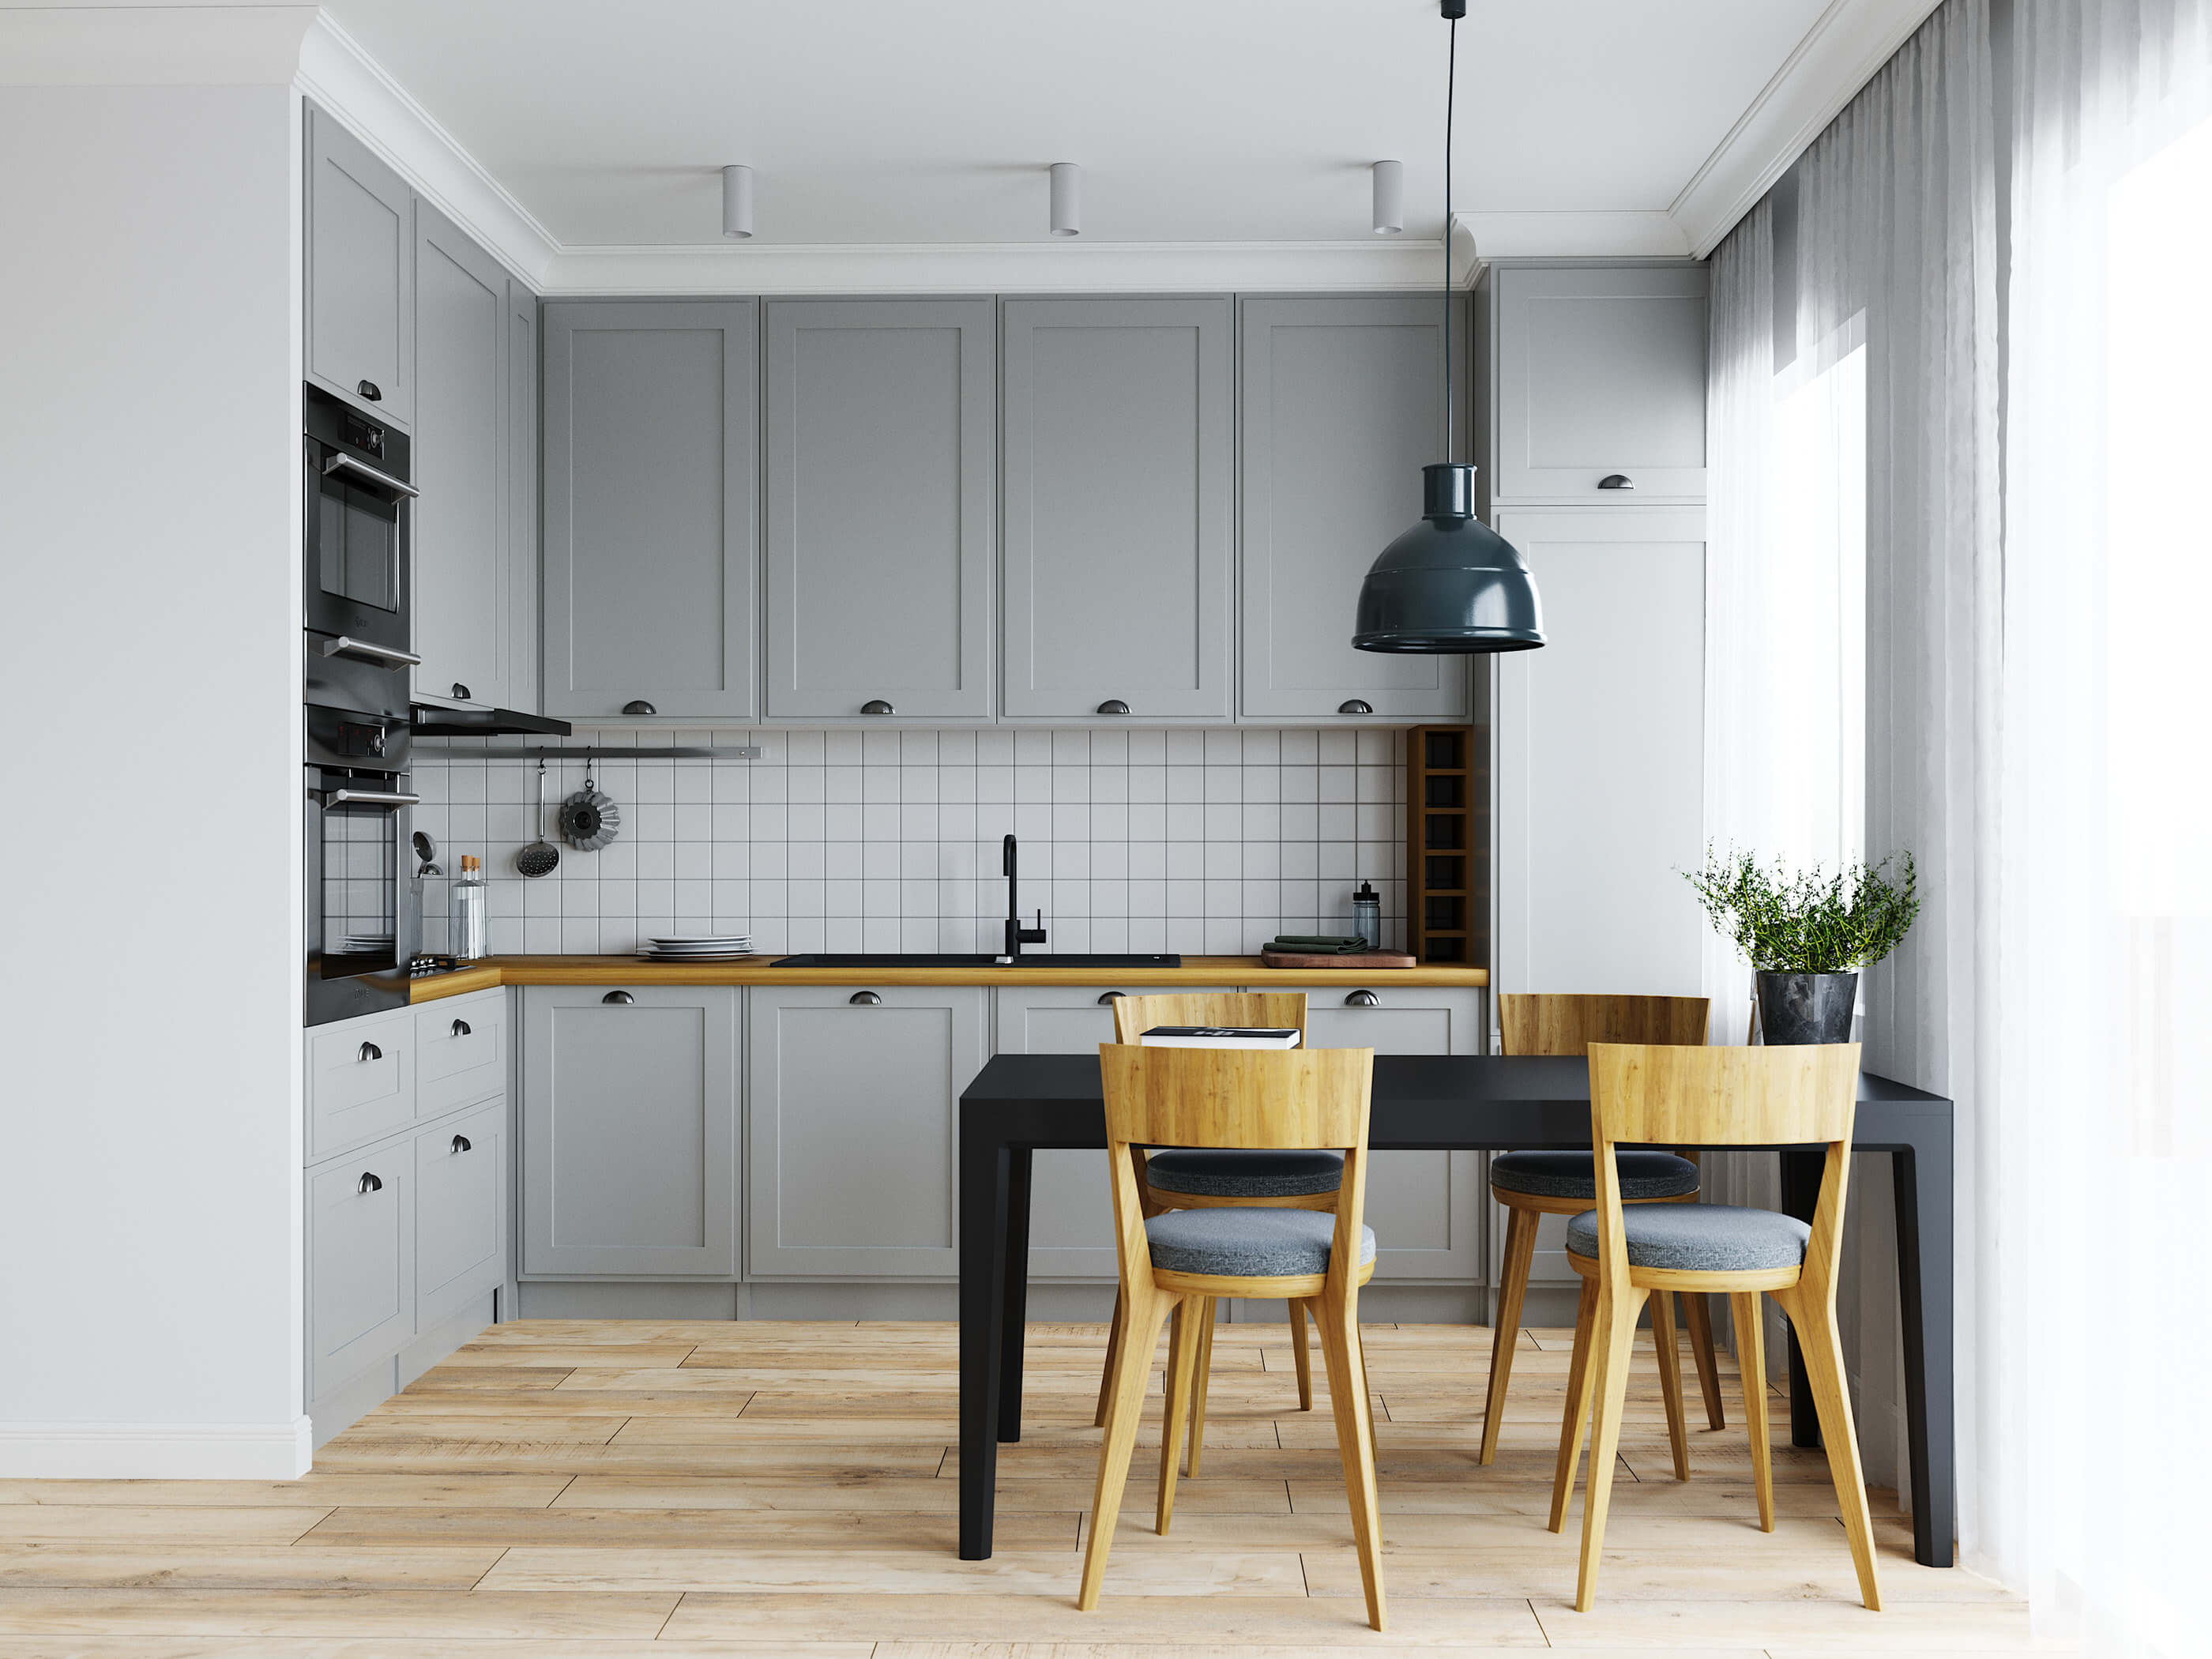 Chọn bàn ghế nhà bếp cho không gian rộng và hẹp